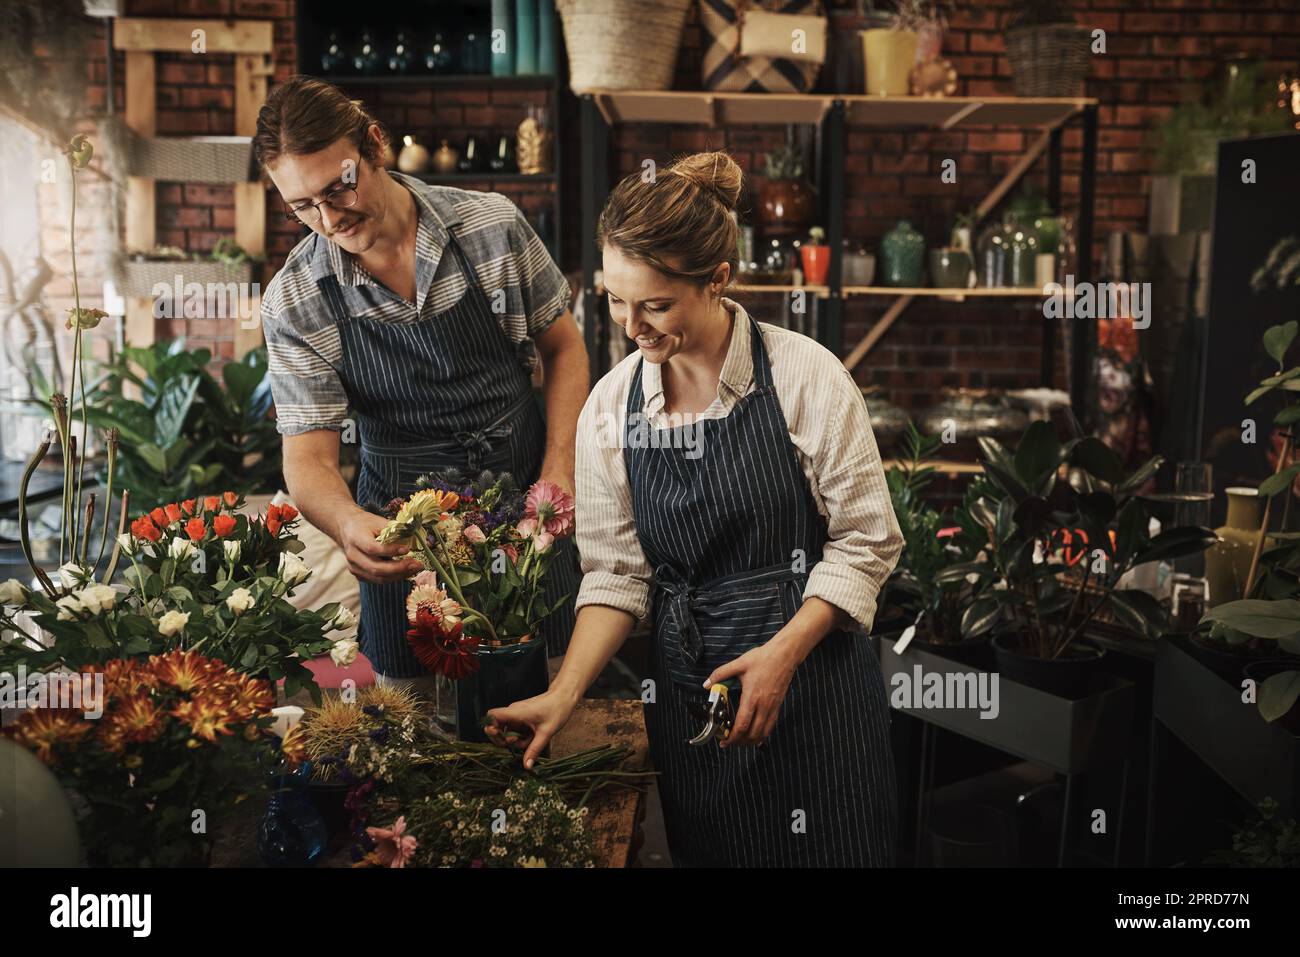 Waren Experten auf dem Gebiet der Floristik. Zwei junge Floristen trimmen Blumen und arbeiten zusammen in ihrer Pflanzenkinderstube. Stockfoto